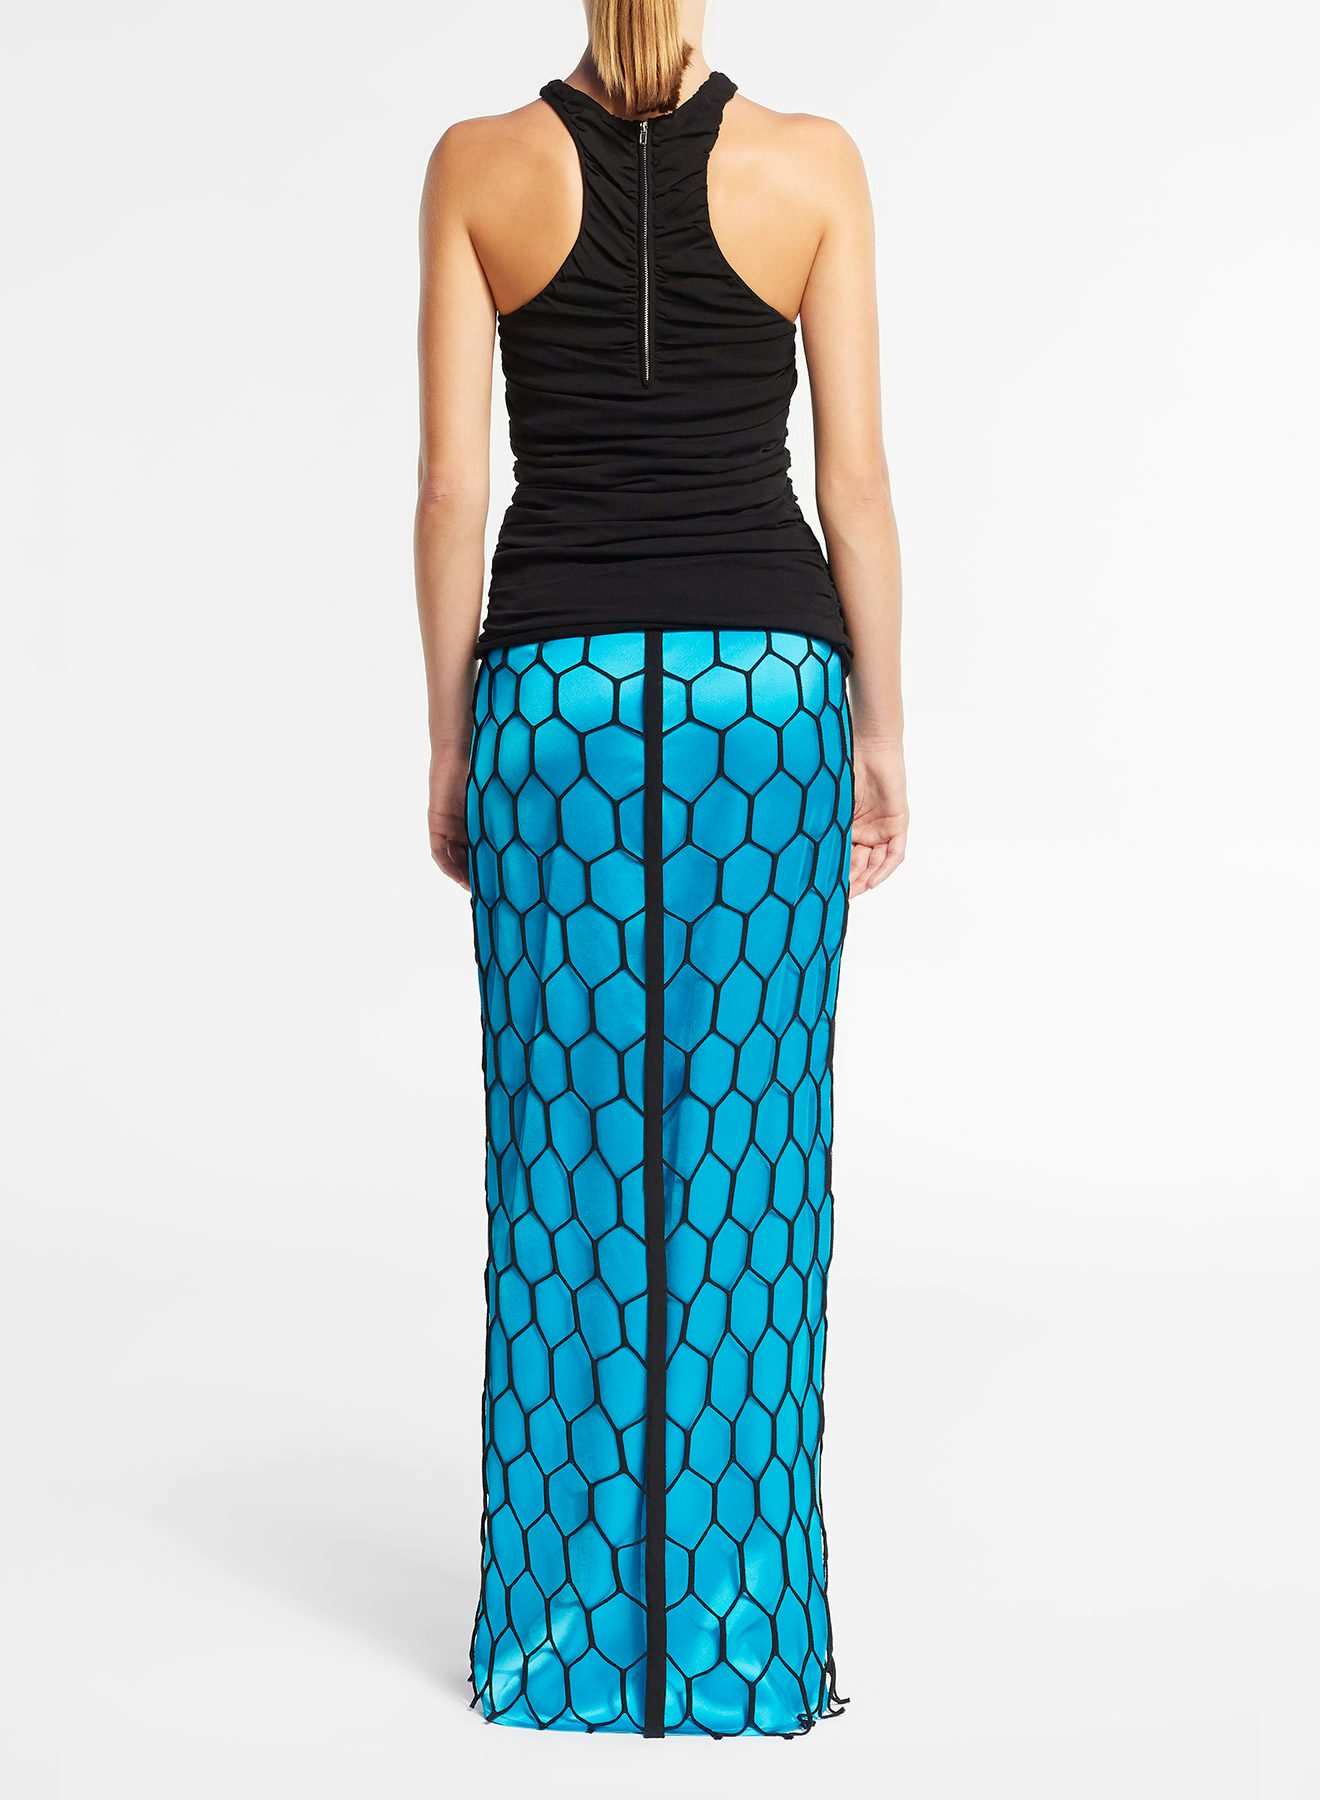 Black fishnet skirt - Nina Ricci